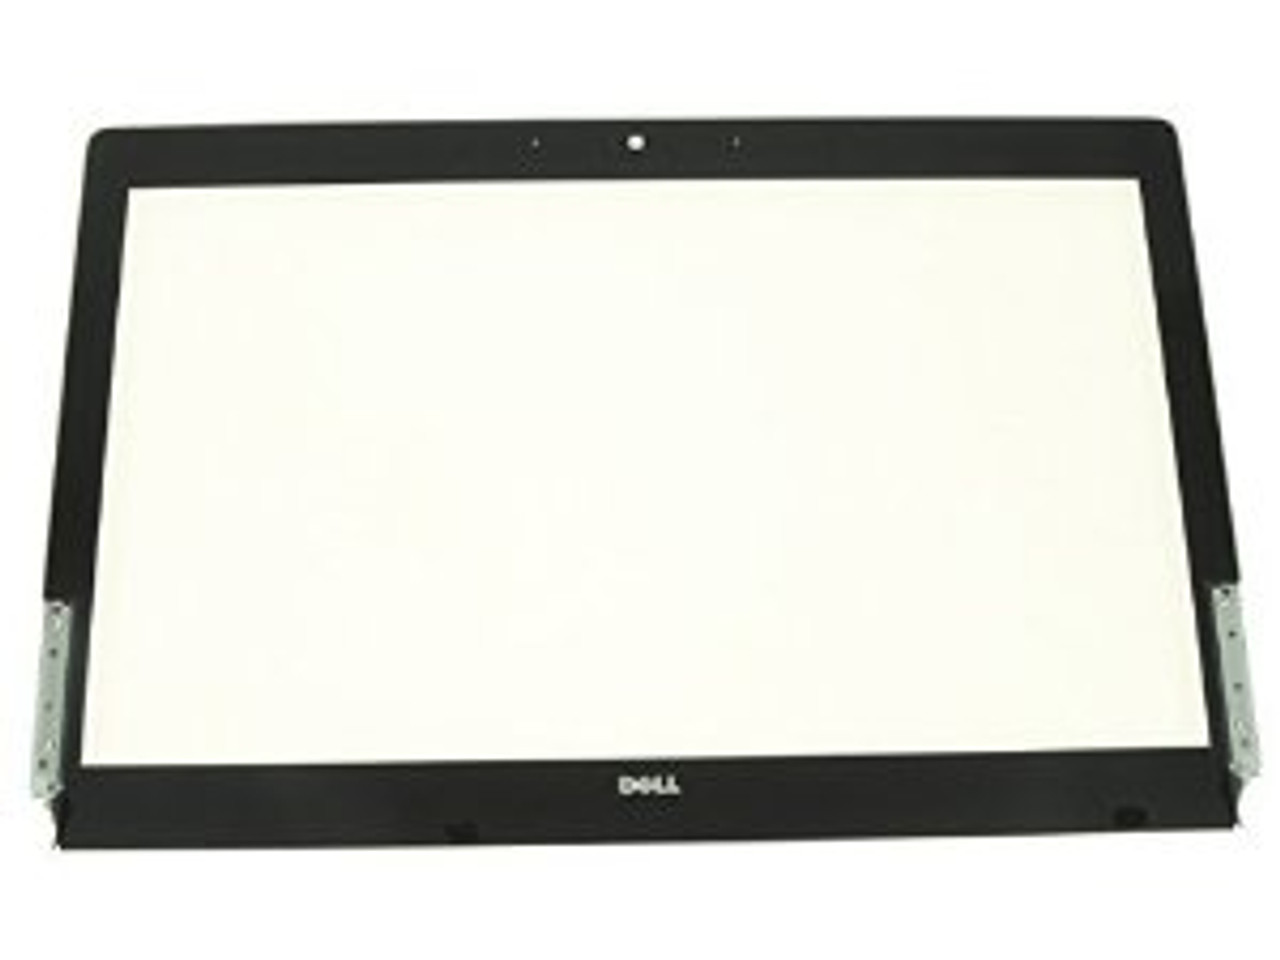 P80T0 - Dell Latitude E5440 LED Black Bezel Touchscreen WebCam Port